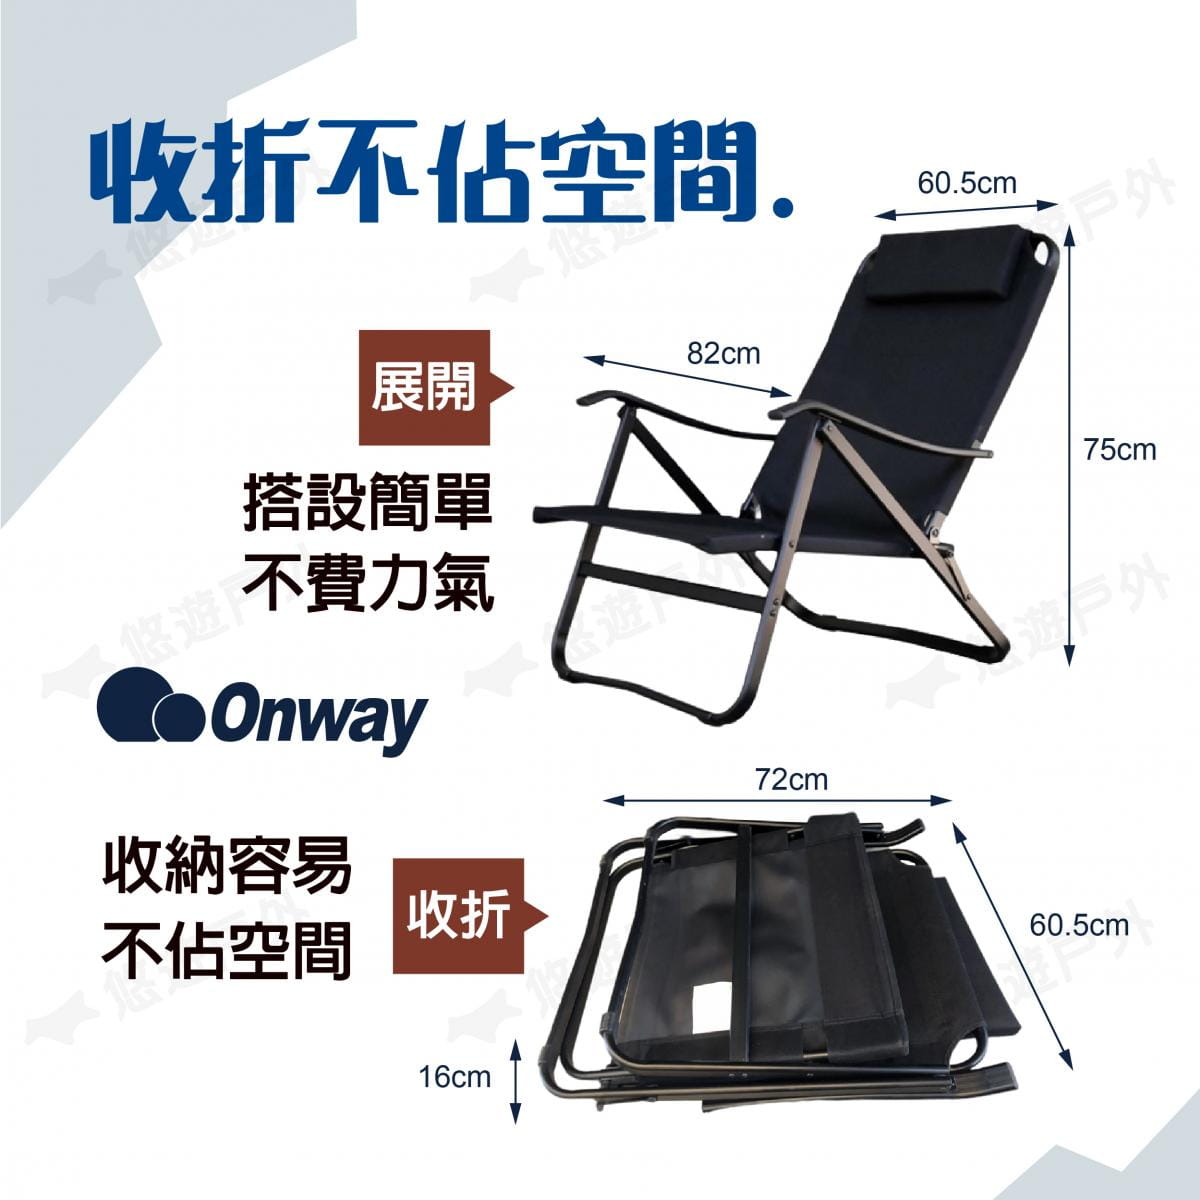 【ONWAY】迷地舒適低黑椅 OW-61-BLK (悠遊戶外) 1